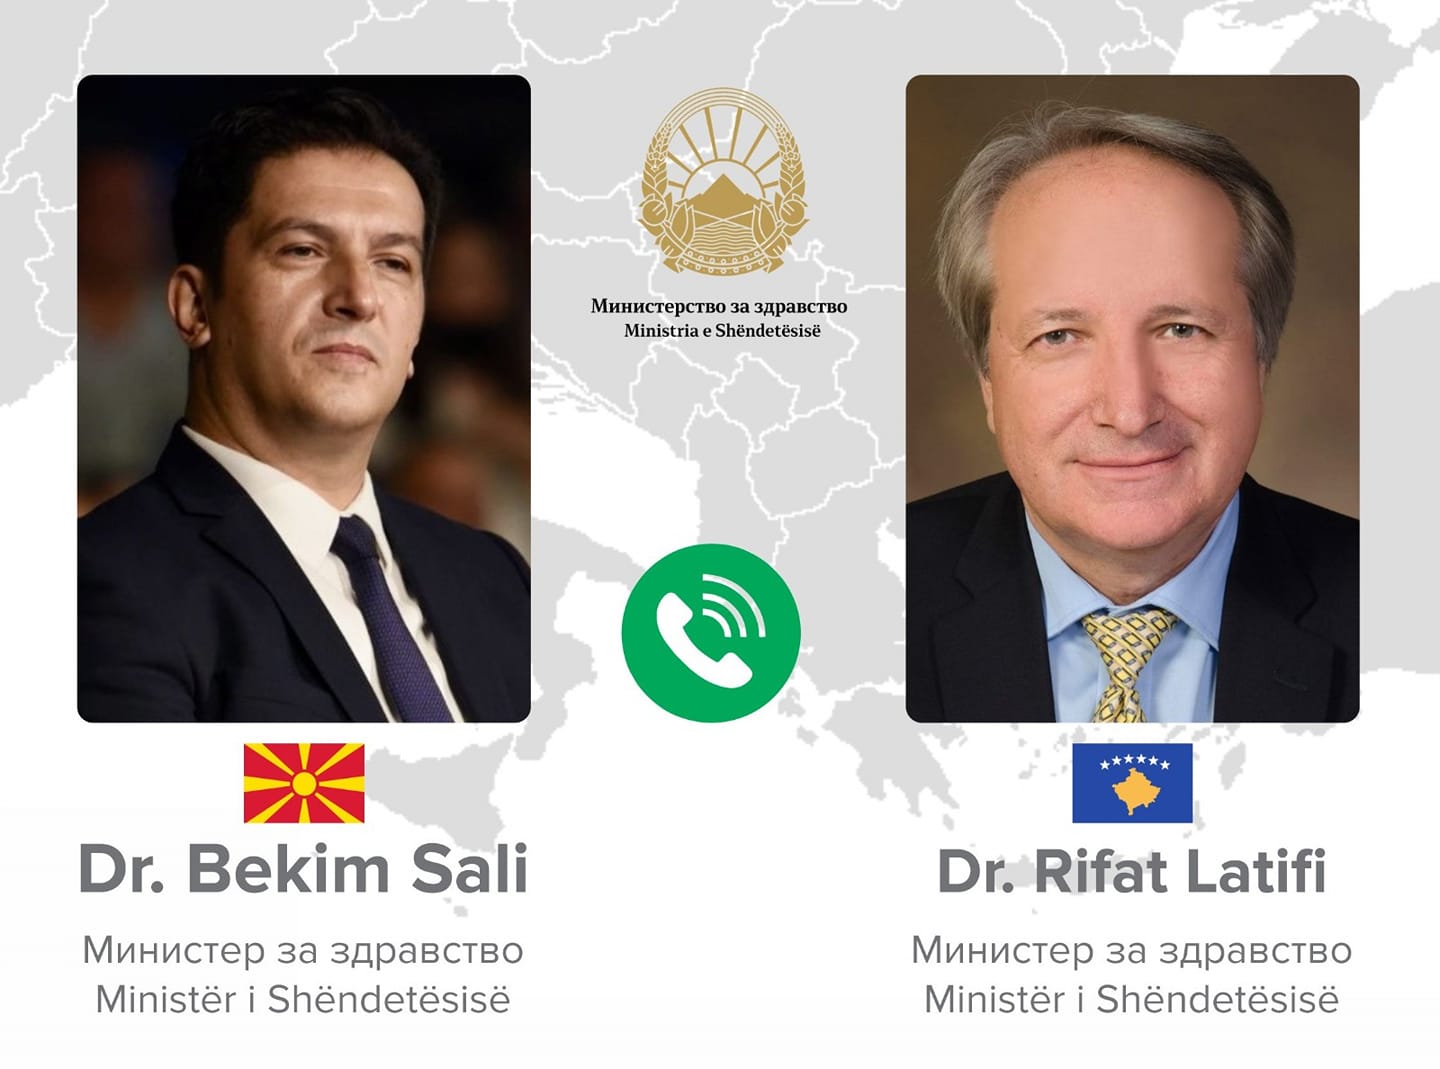 Ministri i Shëndetësisë i Maqedonisë Veriore telefonon Latifin: Rishqyrtoje këtë masë, po i kufizon qytetarët